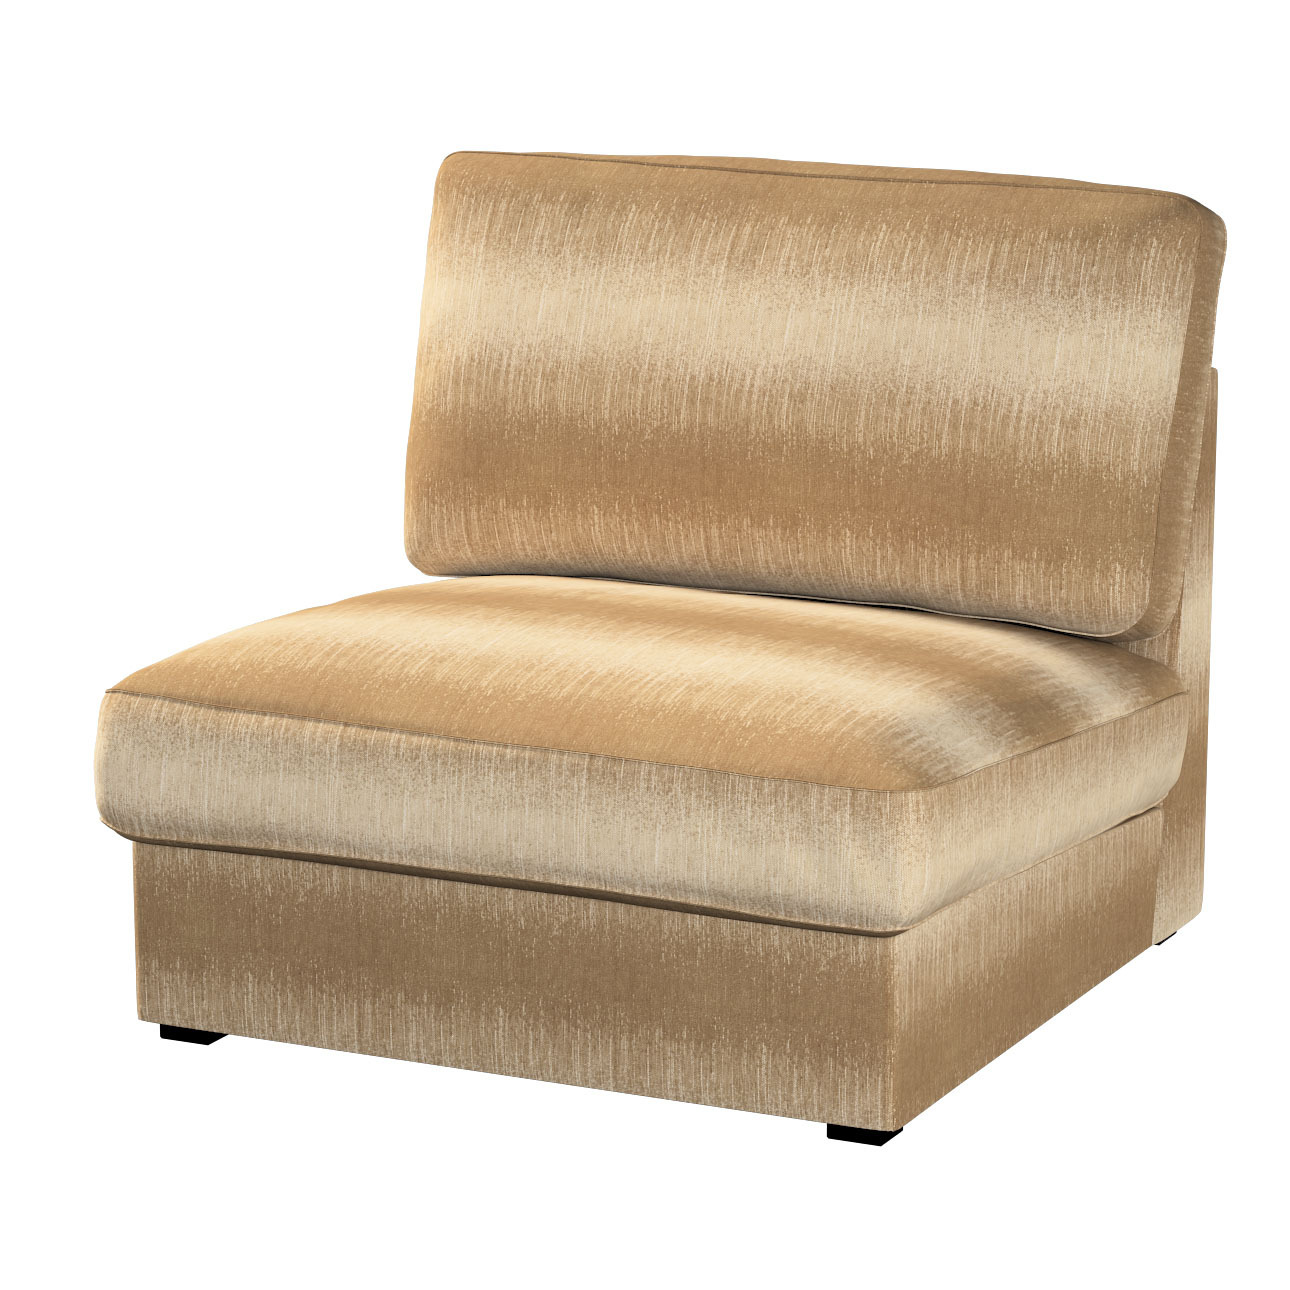 Bezug für Kivik Sessel nicht ausklappbar, creme-beige, Bezug für Sessel Kiv günstig online kaufen